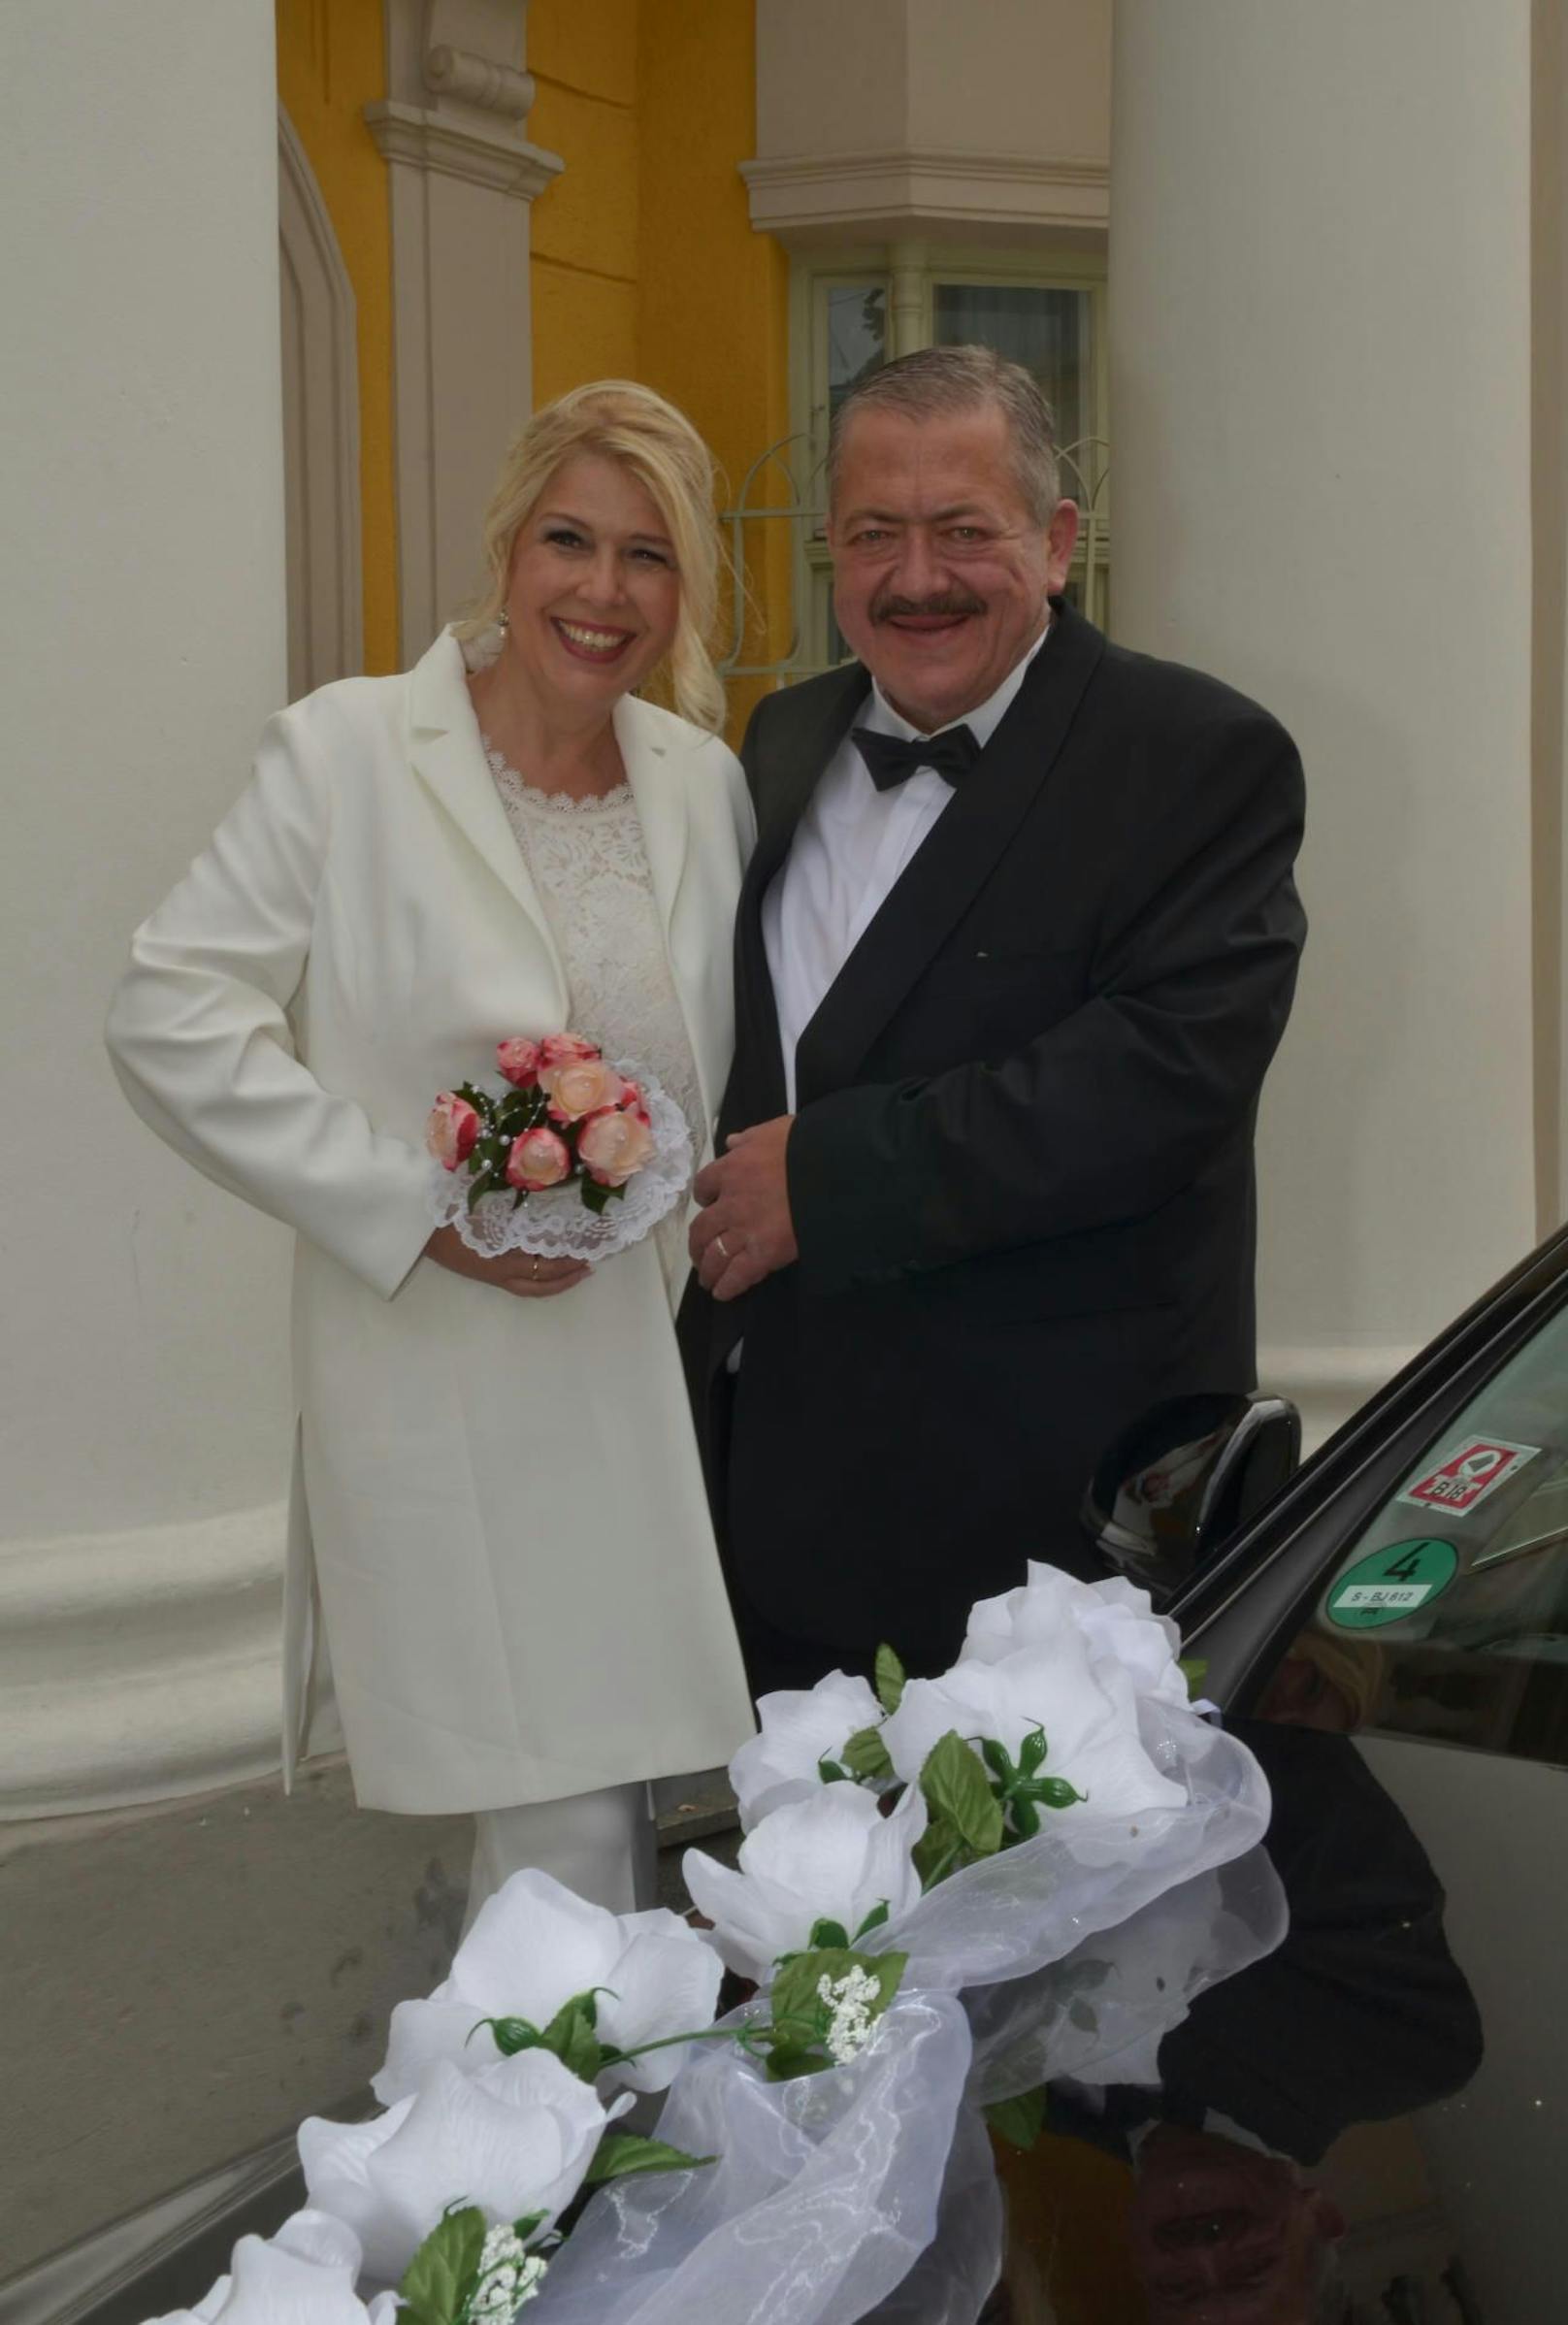 Hochzeit Joseph und Bettina Hannesschläger 
Bildcredit: obs/FREIZEIT REVUE/Barbara Volker